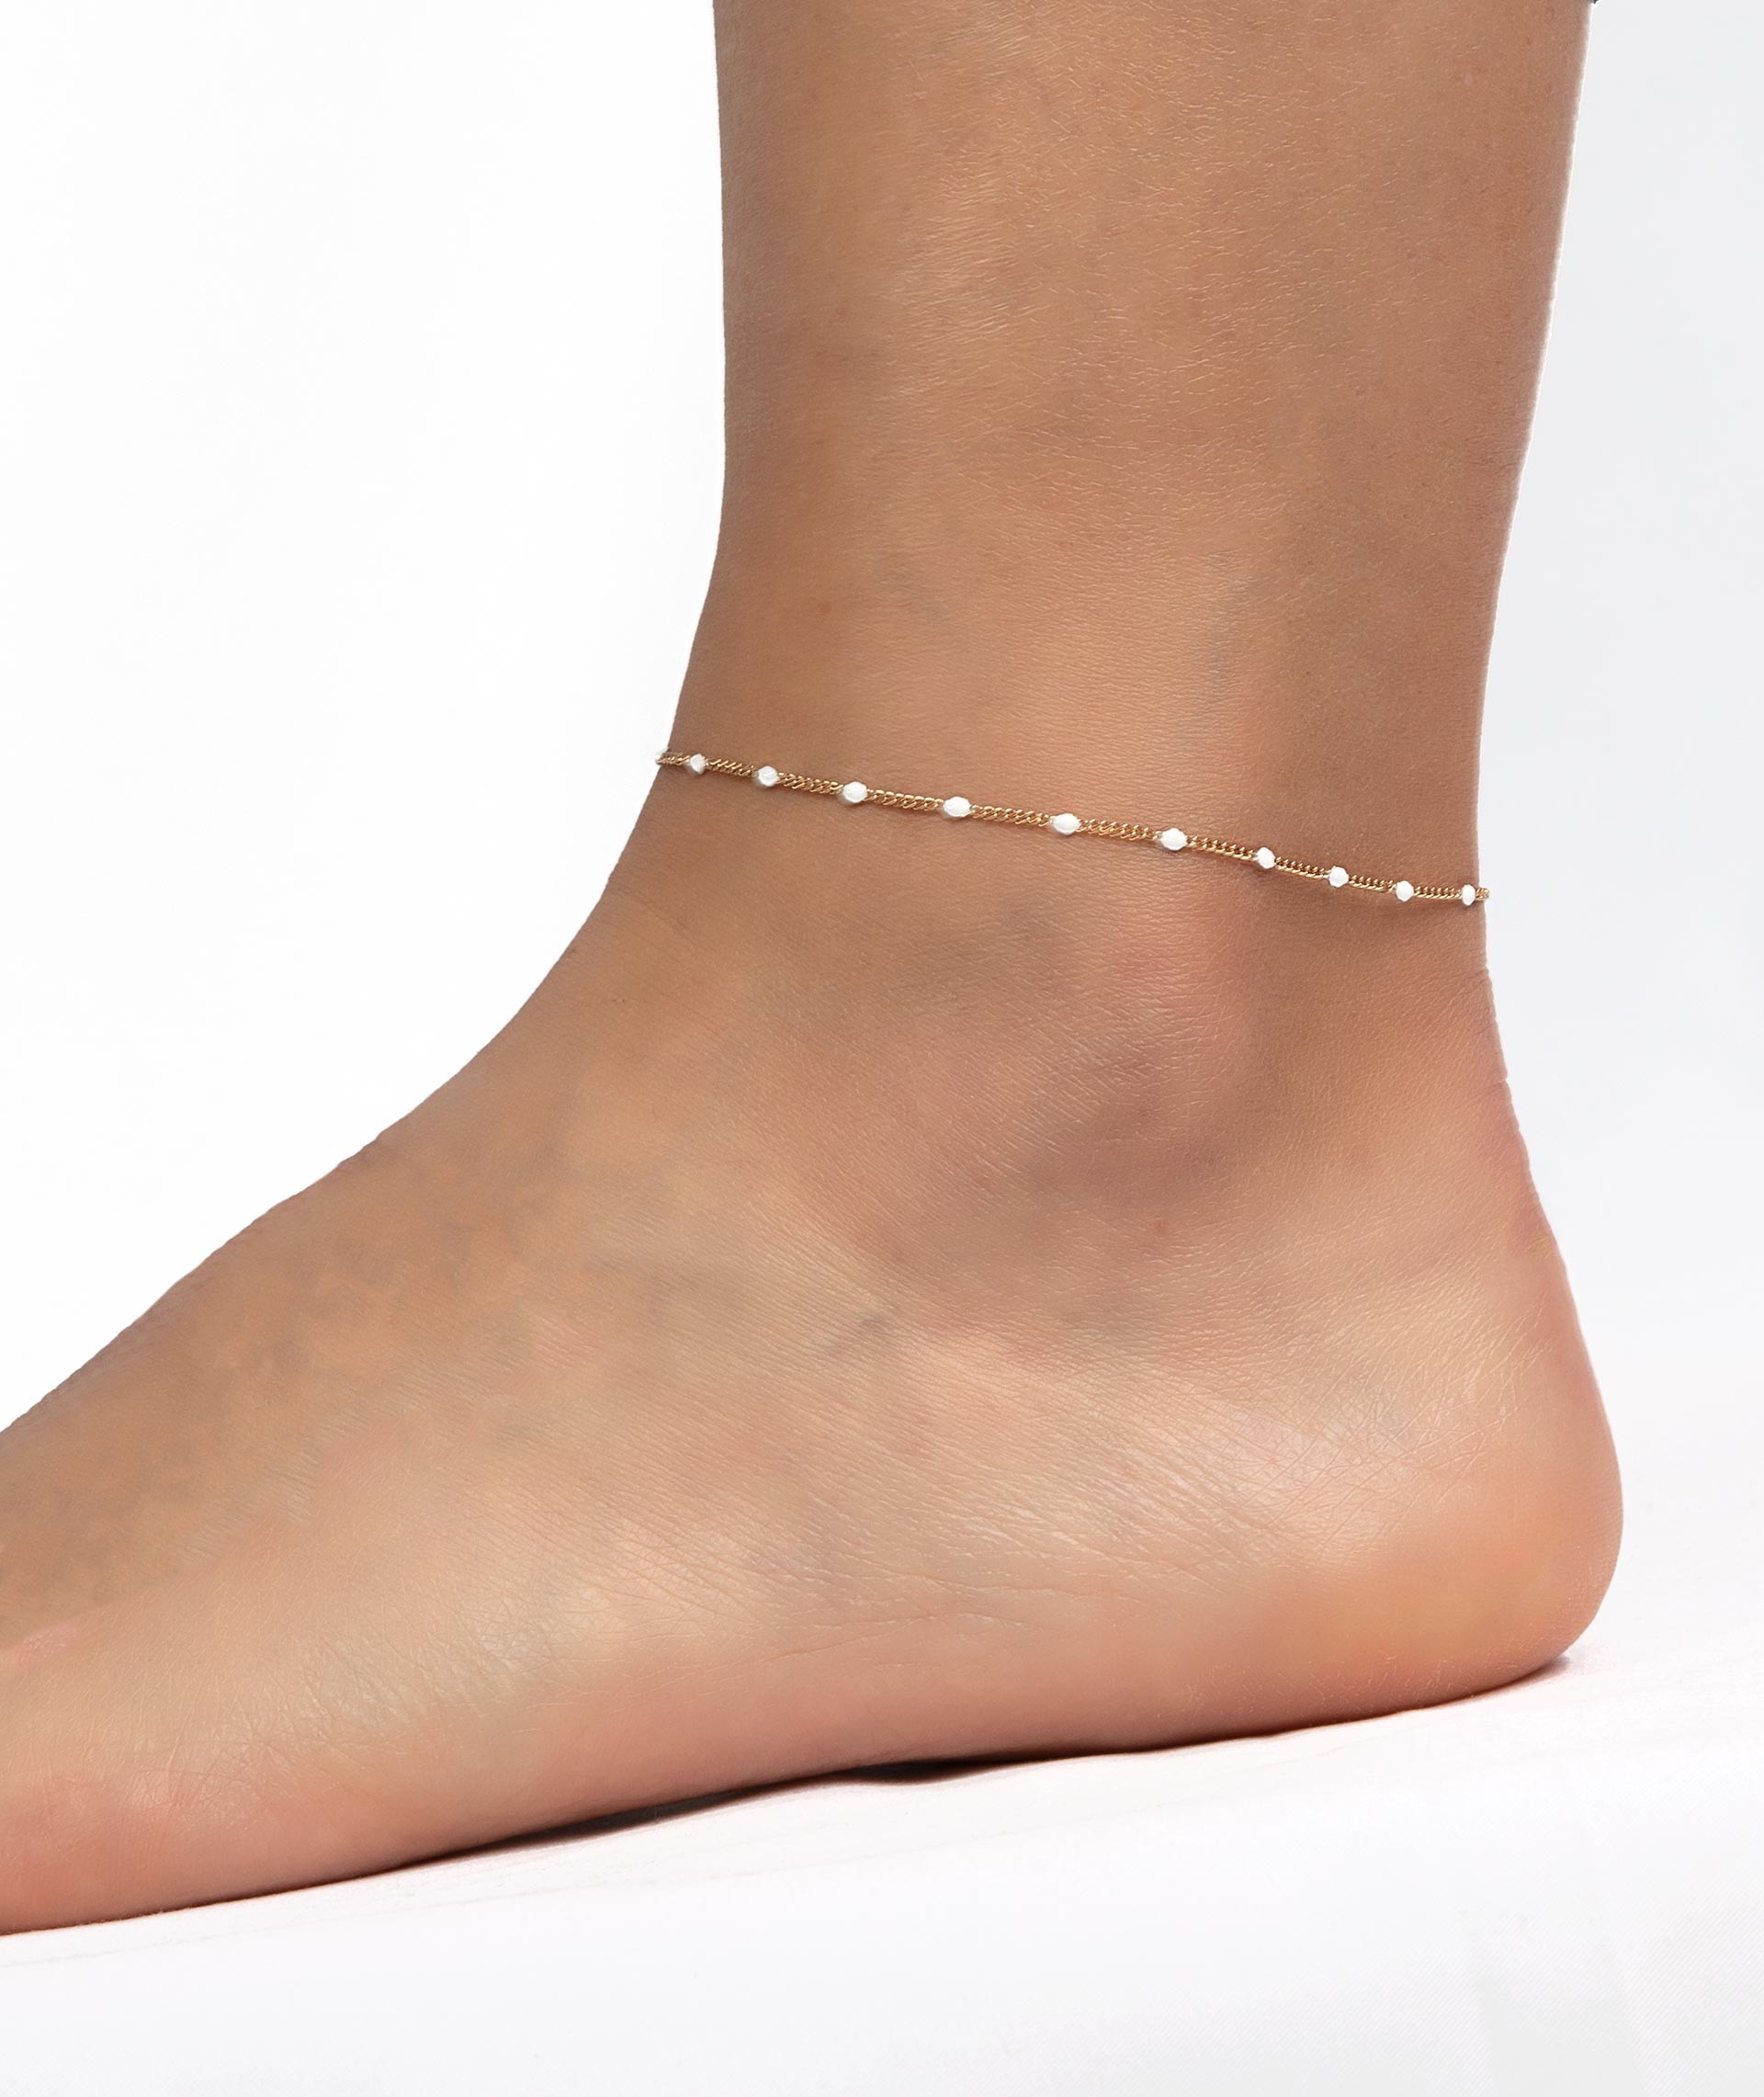 White anklet